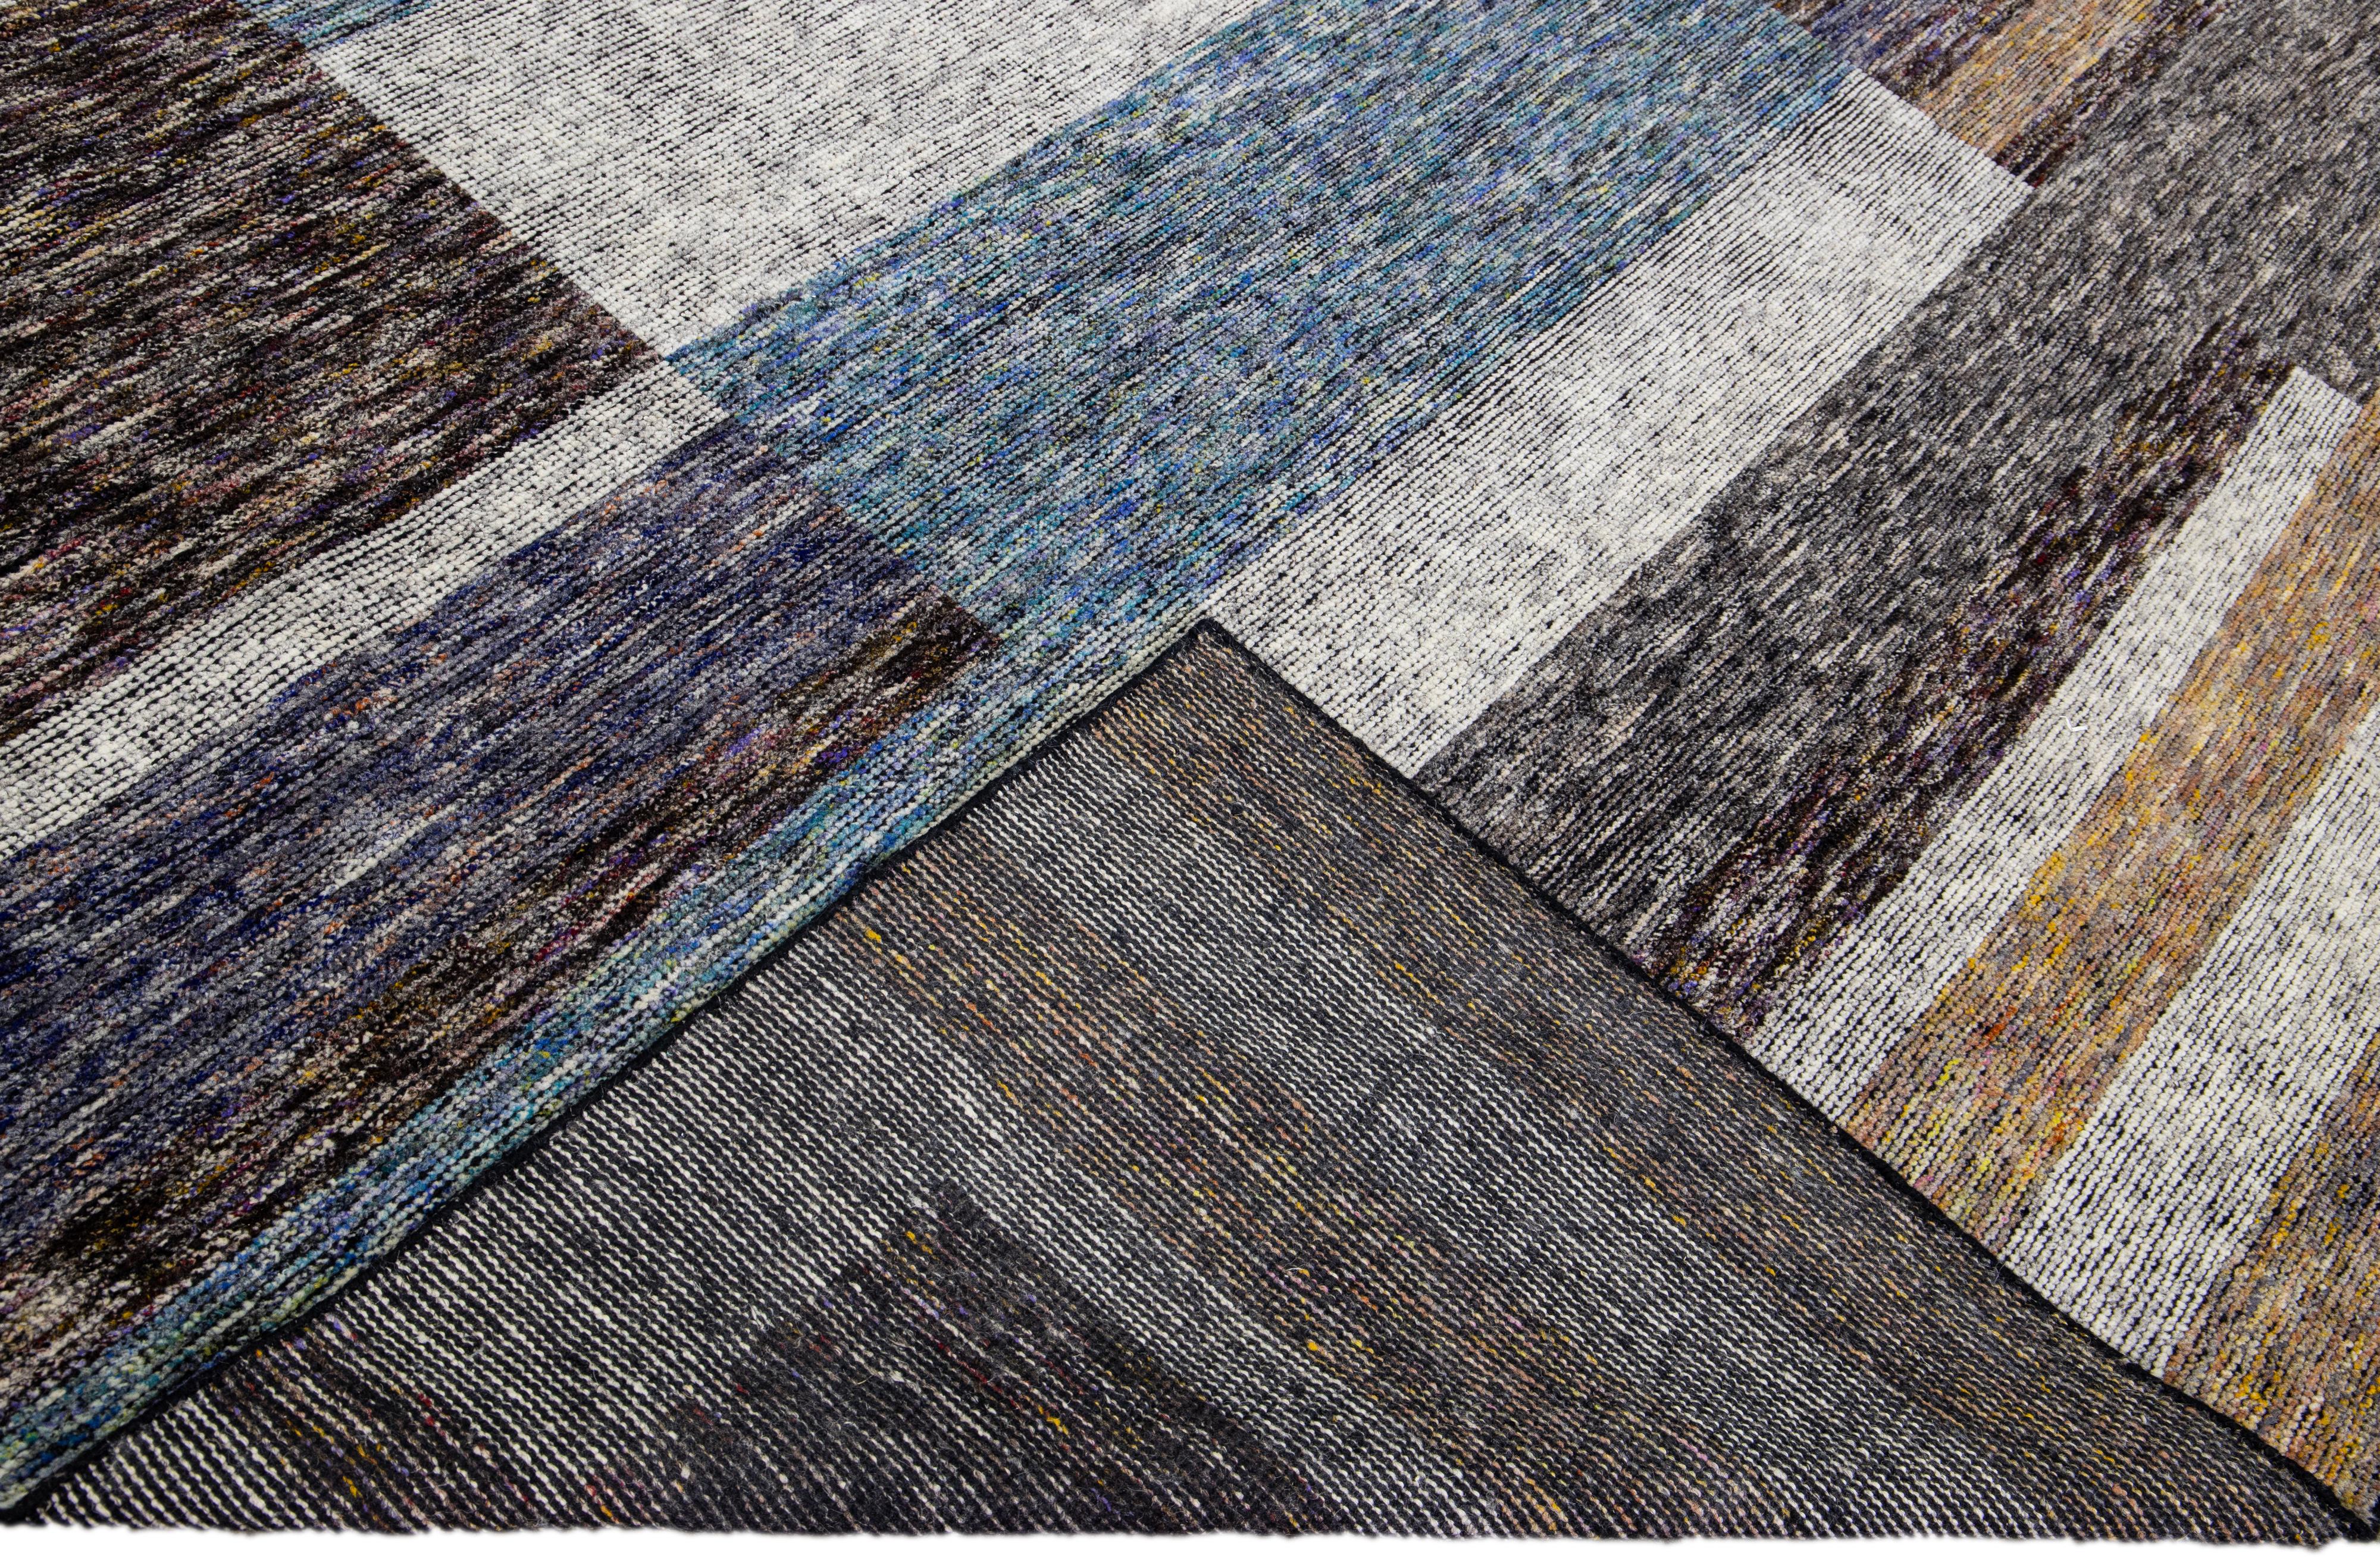 Wunderschöner moderner handgeknüpfter Wollteppich aus der Safi Collection von Apadana mit einem erdigen Farbfeld. Dieser moderne Teppich hat blaue, graue und braune Akzente ein wunderschönes Layout abstraktes Design.

Dieser Teppich misst: 9'3